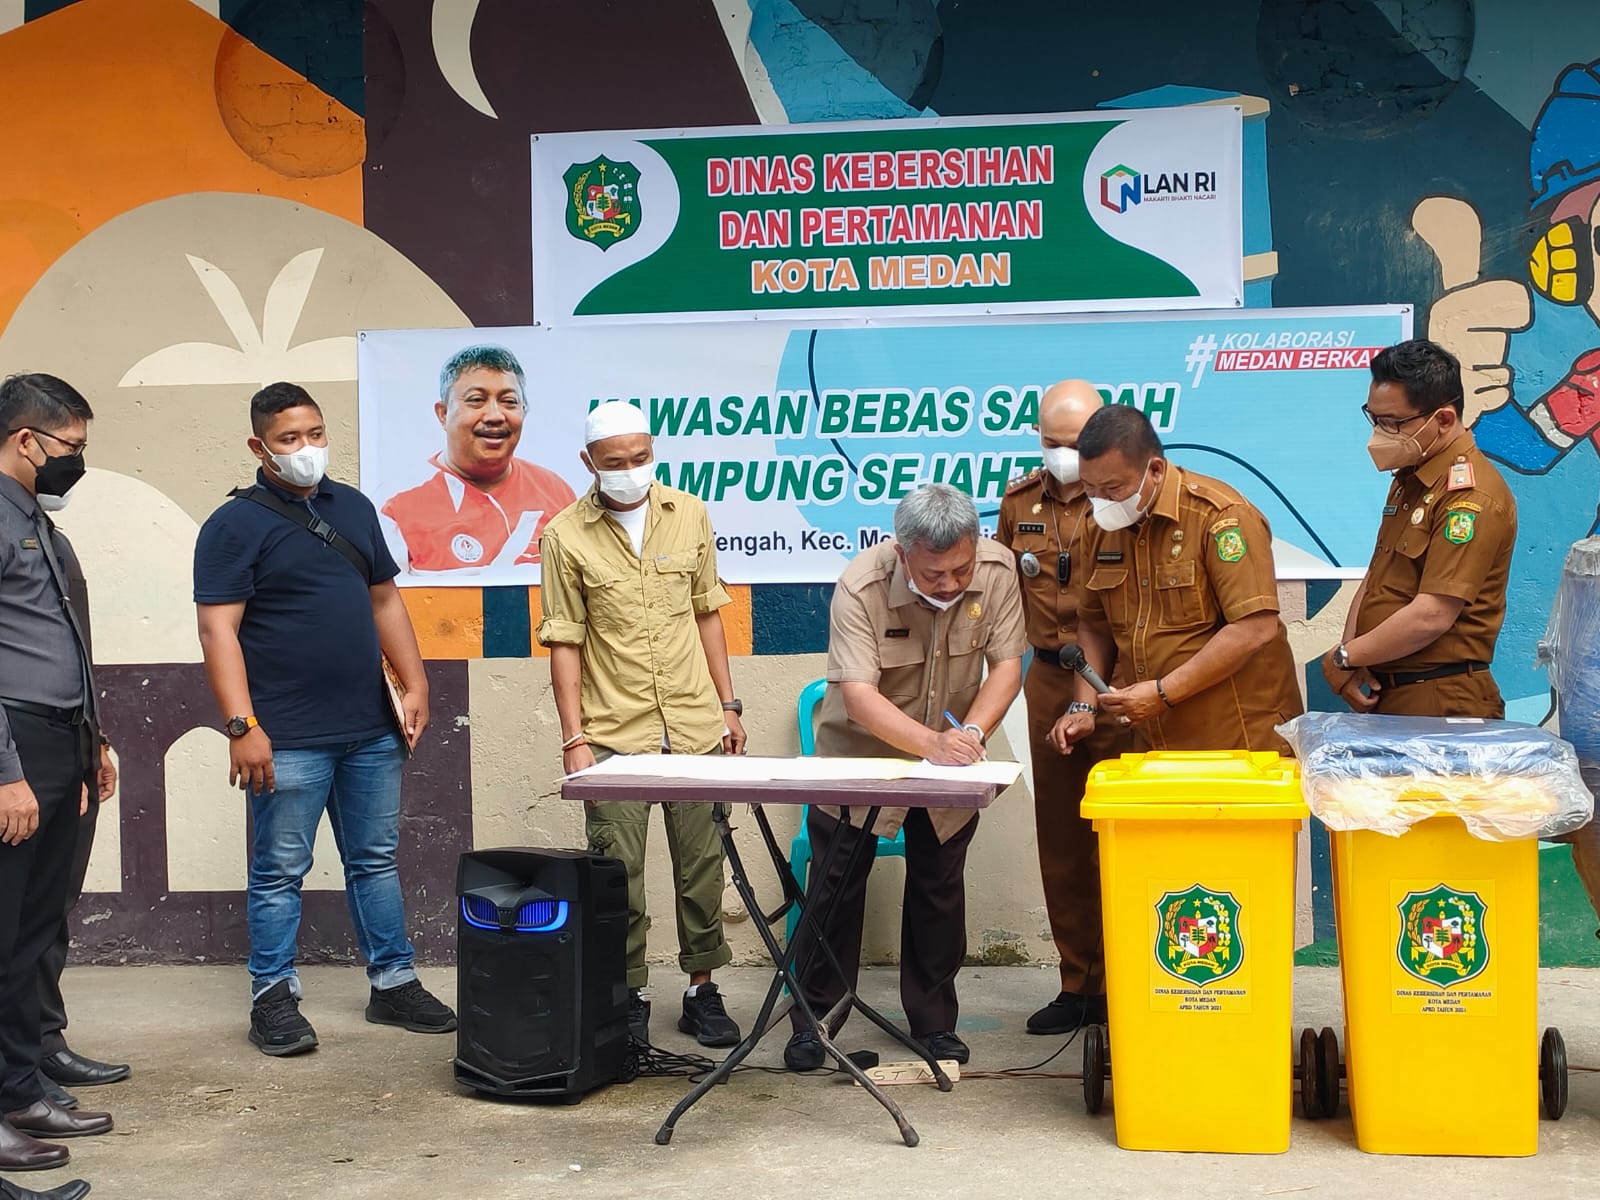 Bobby Tetapkan Kampung Sejahtera 'Pilot Project' Kawasan Bebas Sampah di Medan